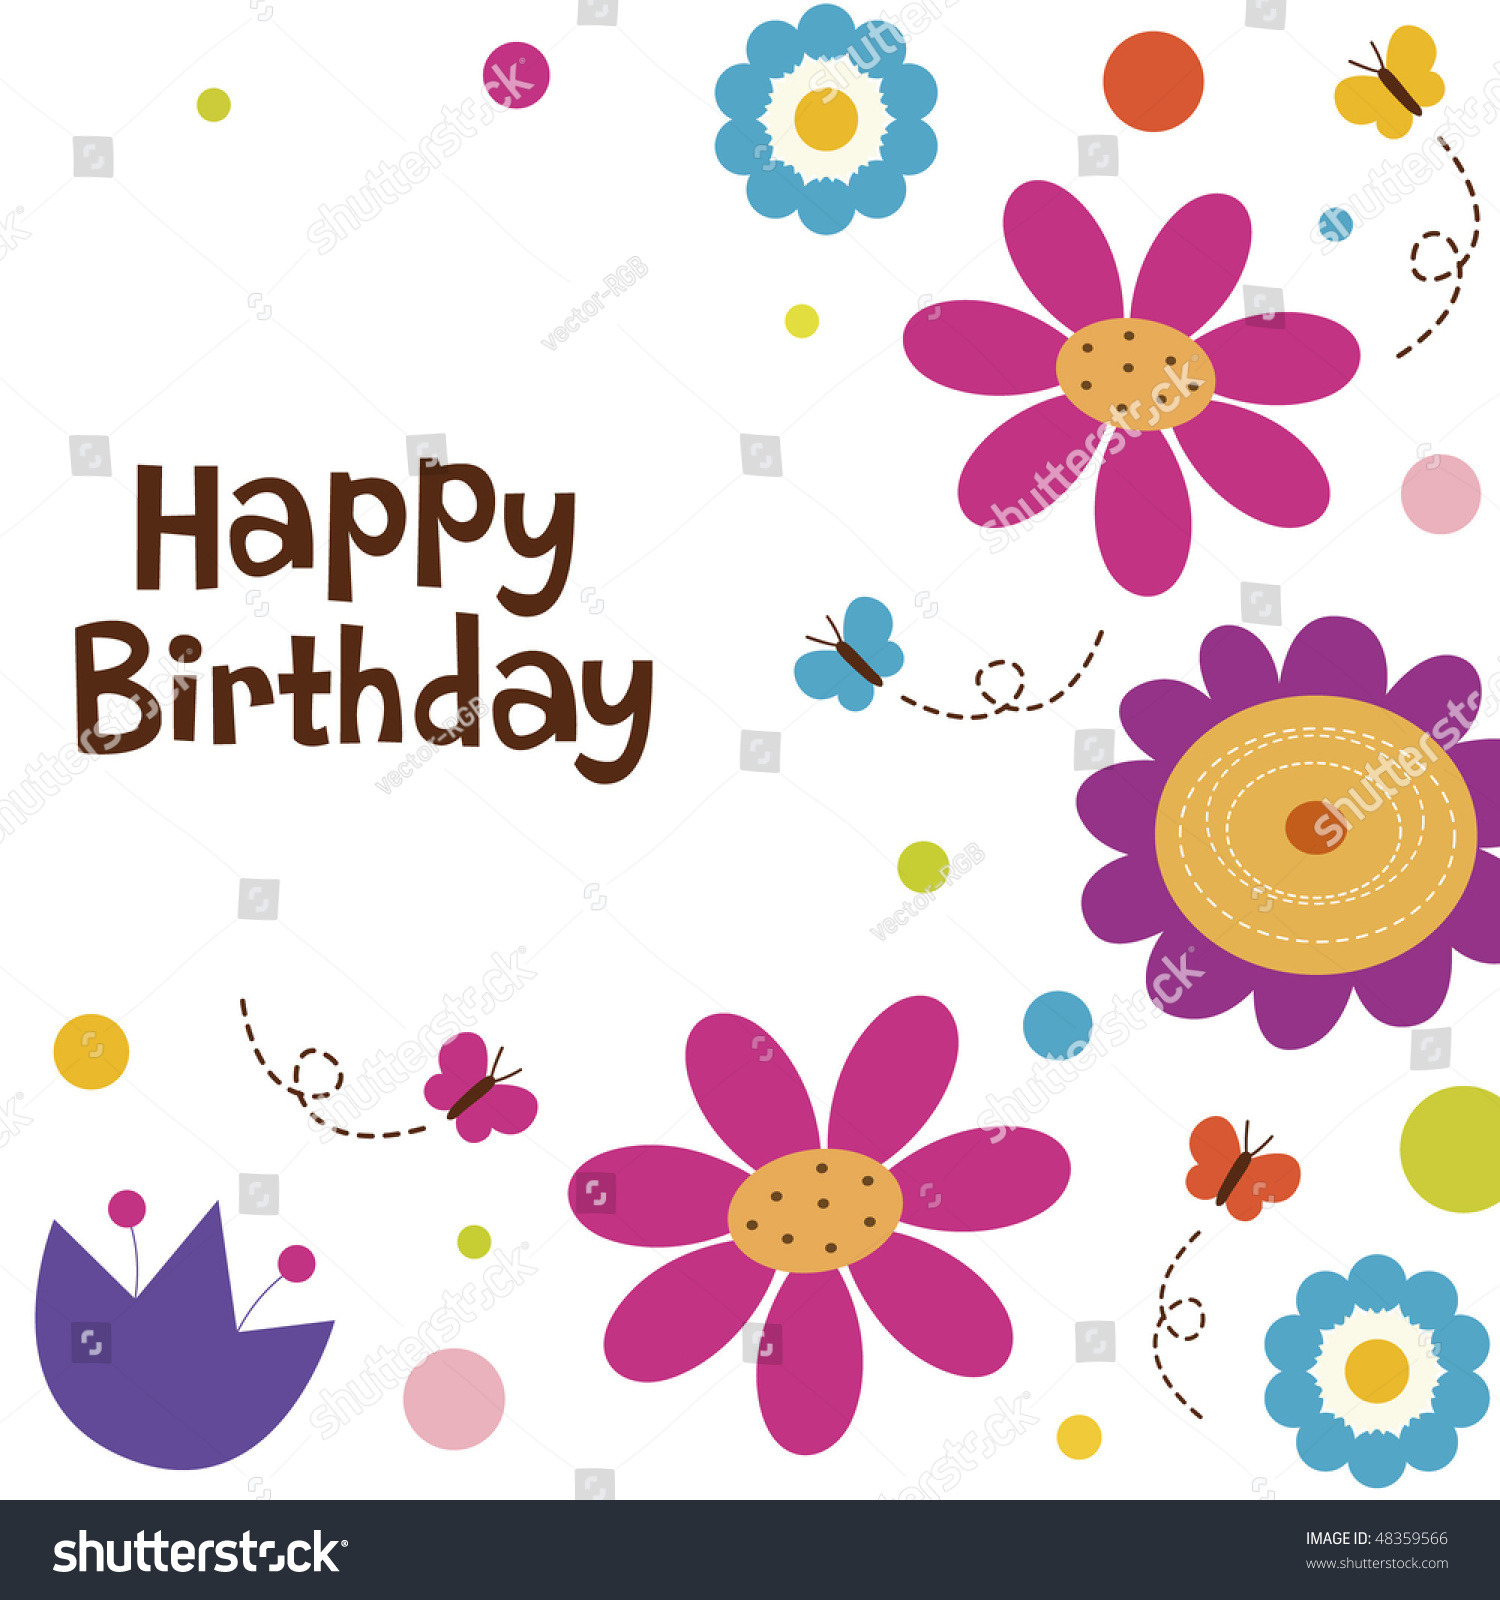 Flower Card Design Stock Vector Illustration 48359566 : Shutterstock